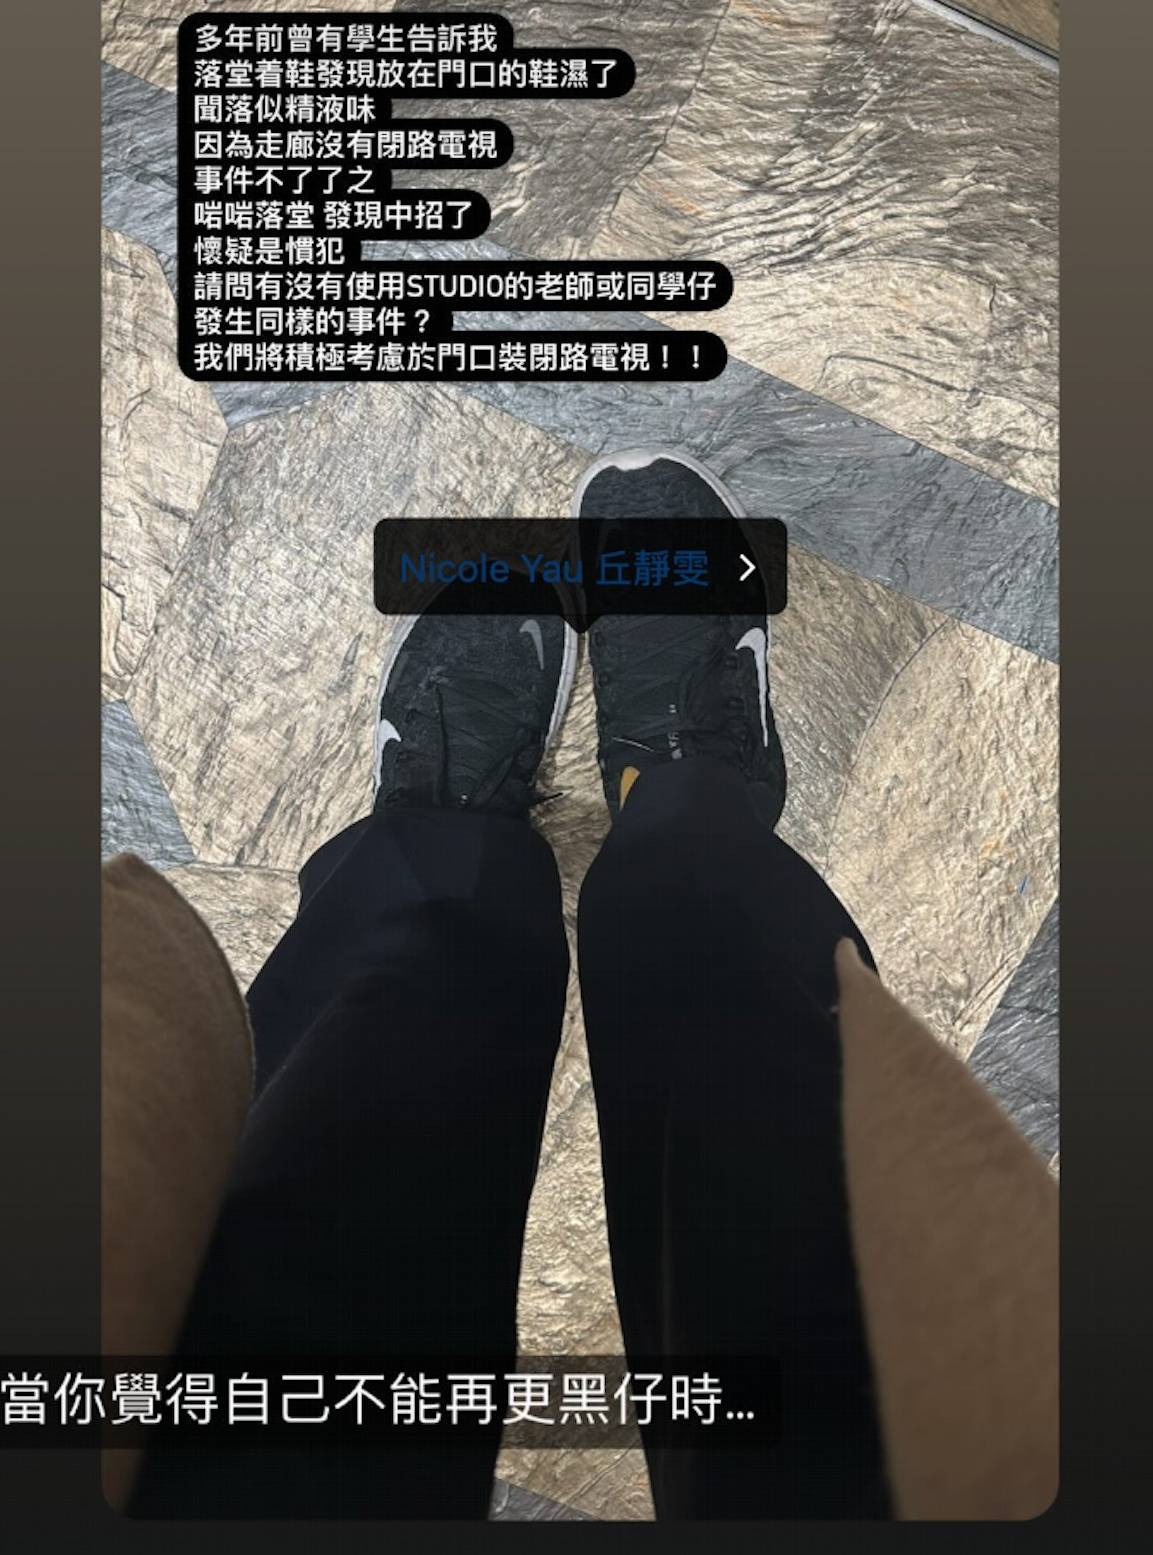 丘静雯 丘静雯转发瑜伽教室的帖文，相中Tag了她的IG，相信正是「受害」的波鞋。